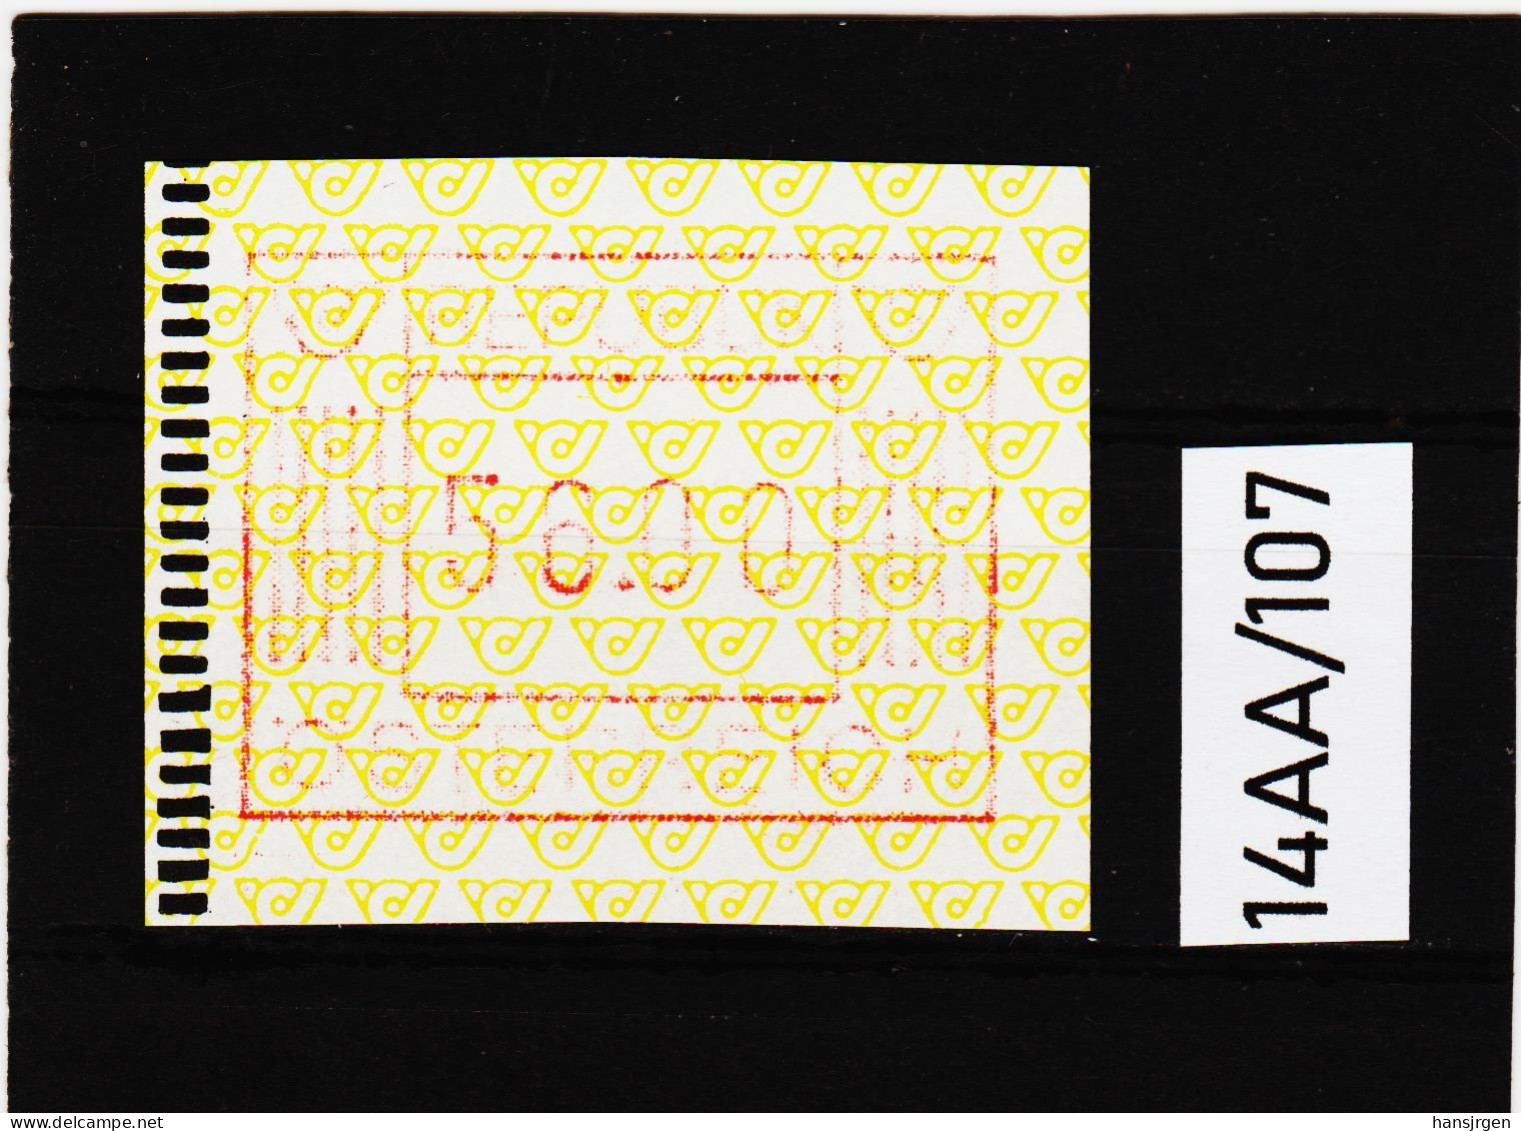 14AA/107  ÖSTERREICH 1983 AUTOMATENMARKEN 1. AUSGABE  56,00 SCHILLING   ** Postfrisch - Machine Labels [ATM]